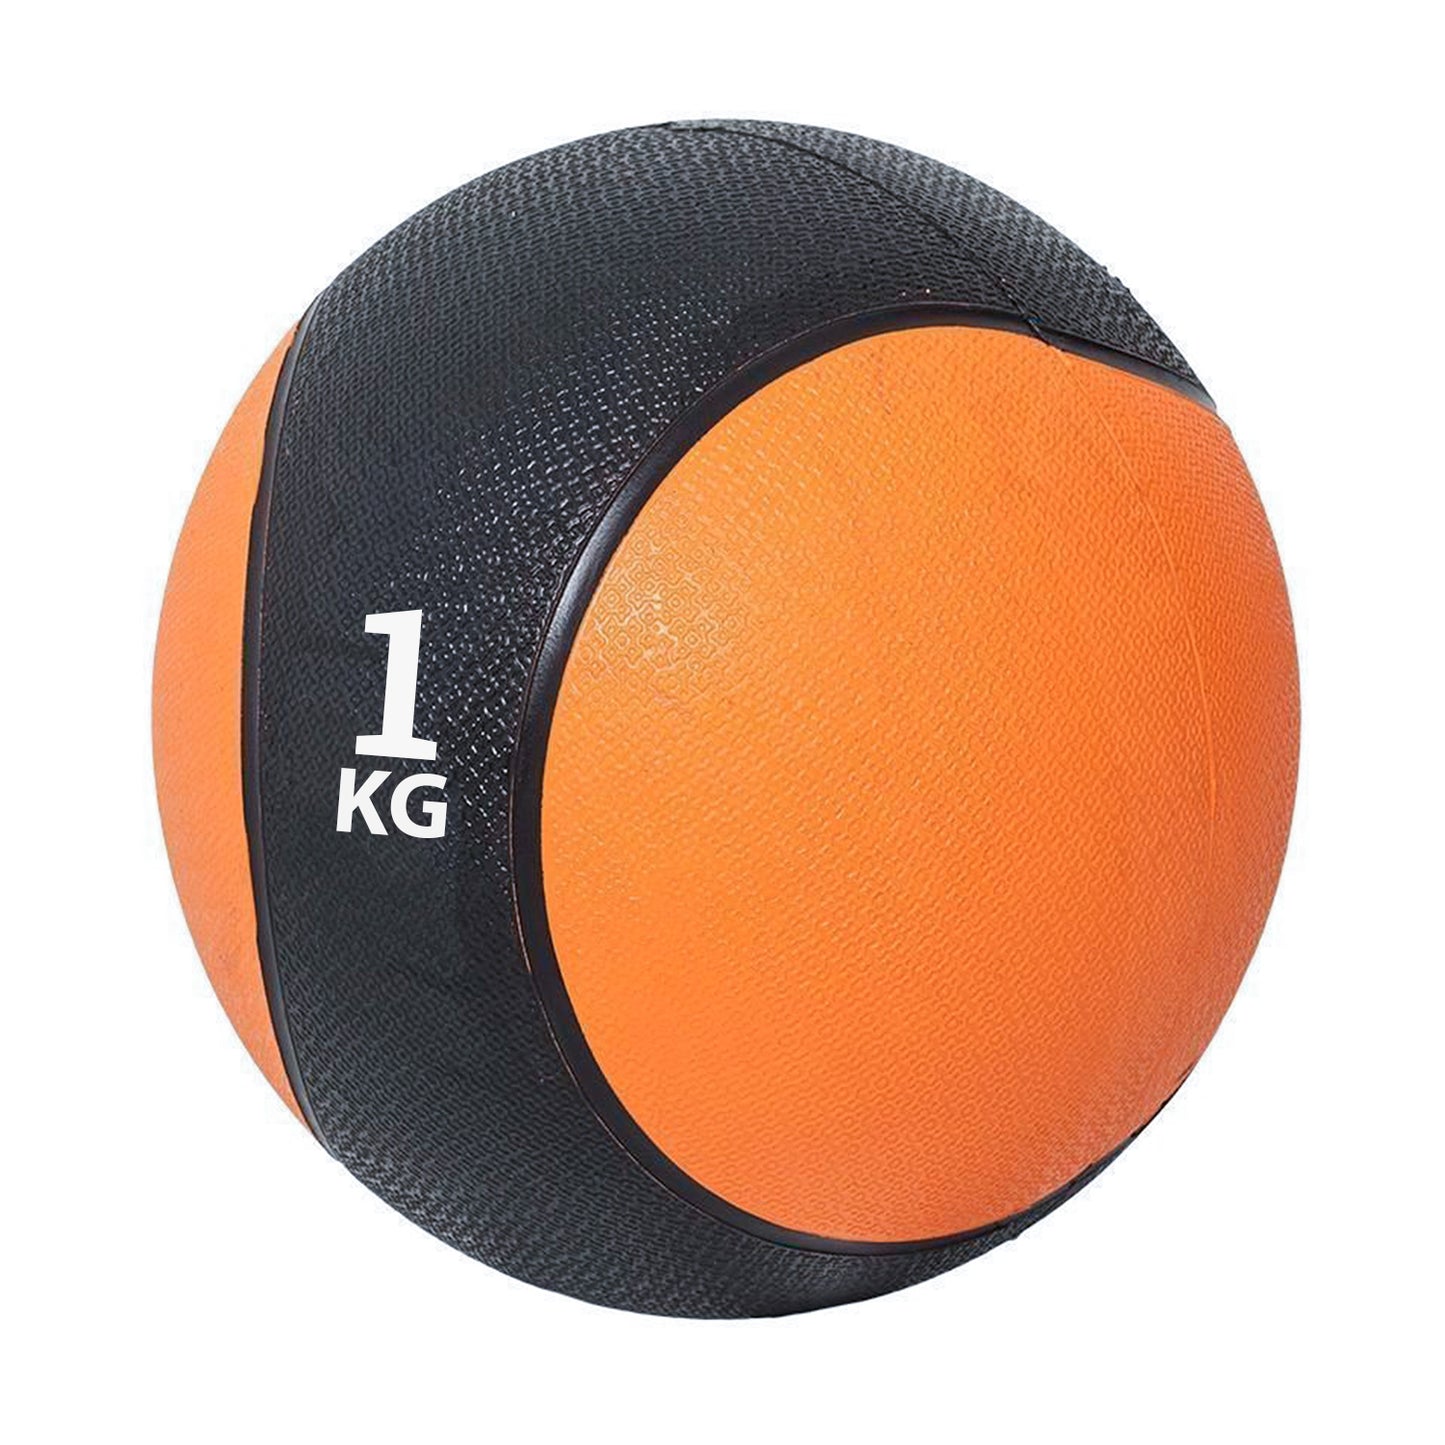 كرة طبية من المطاط لاعادة التأهيل و اللياقة البدنية - لون اسود و برتقالي - وزن 1 كيلو جرام